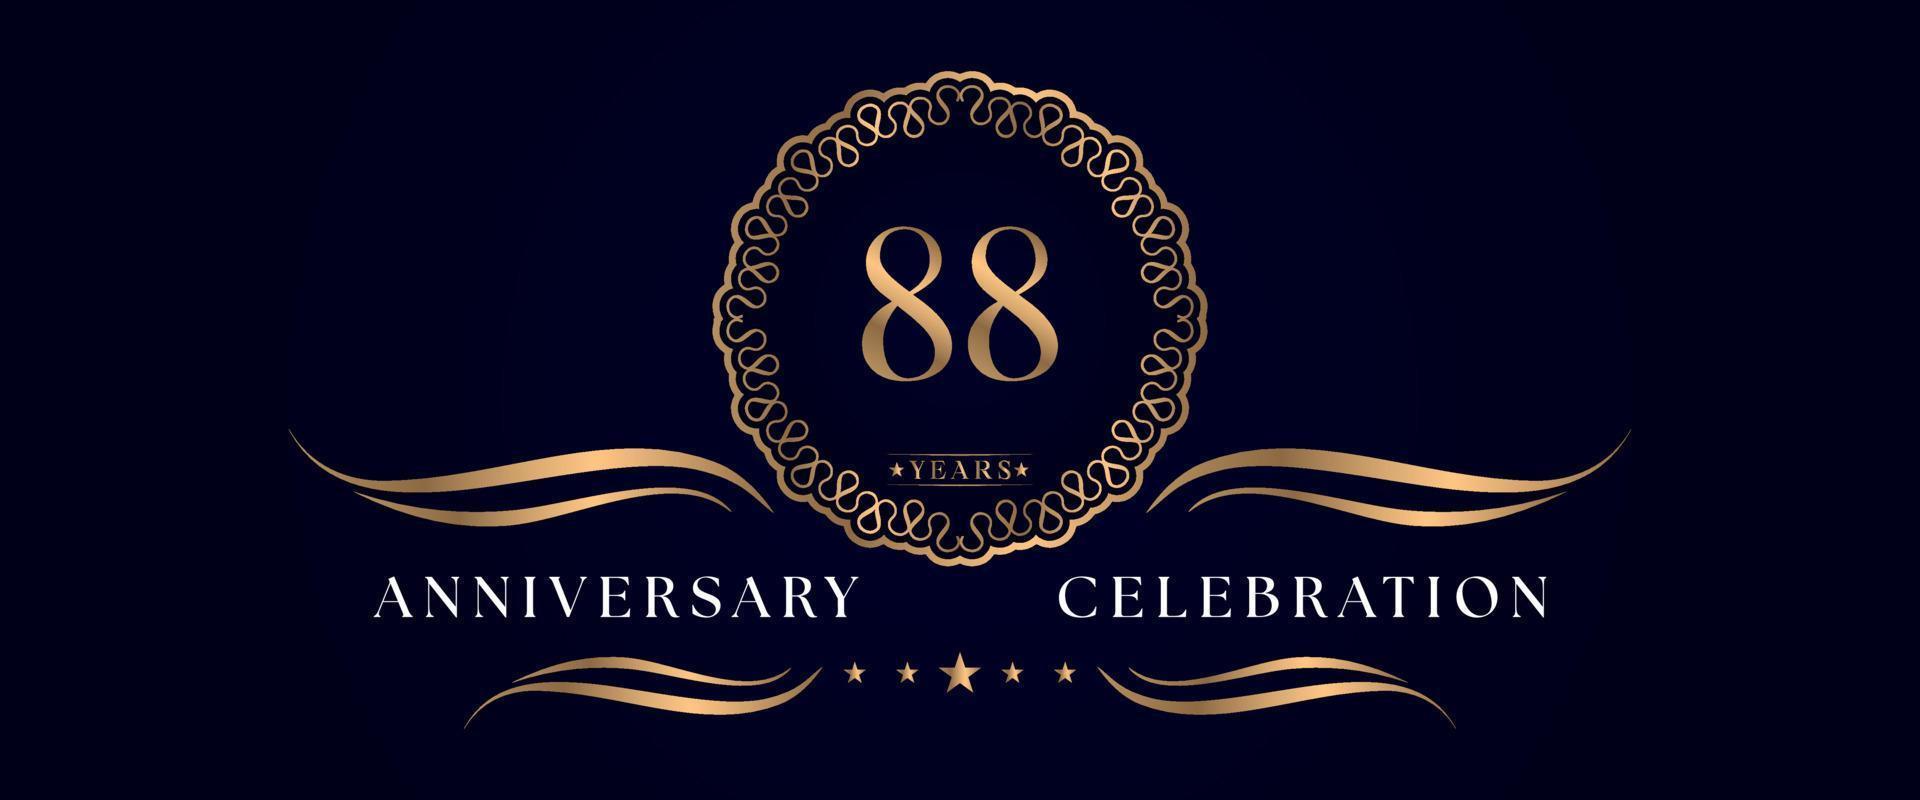 Celebrazione dell'anniversario di 88 anni con elegante cornice circolare isolata su sfondo blu scuro. disegno vettoriale per biglietto di auguri, festa di compleanno, matrimonio, festa evento, cerimonia. Logo dell'anniversario di 88 anni.